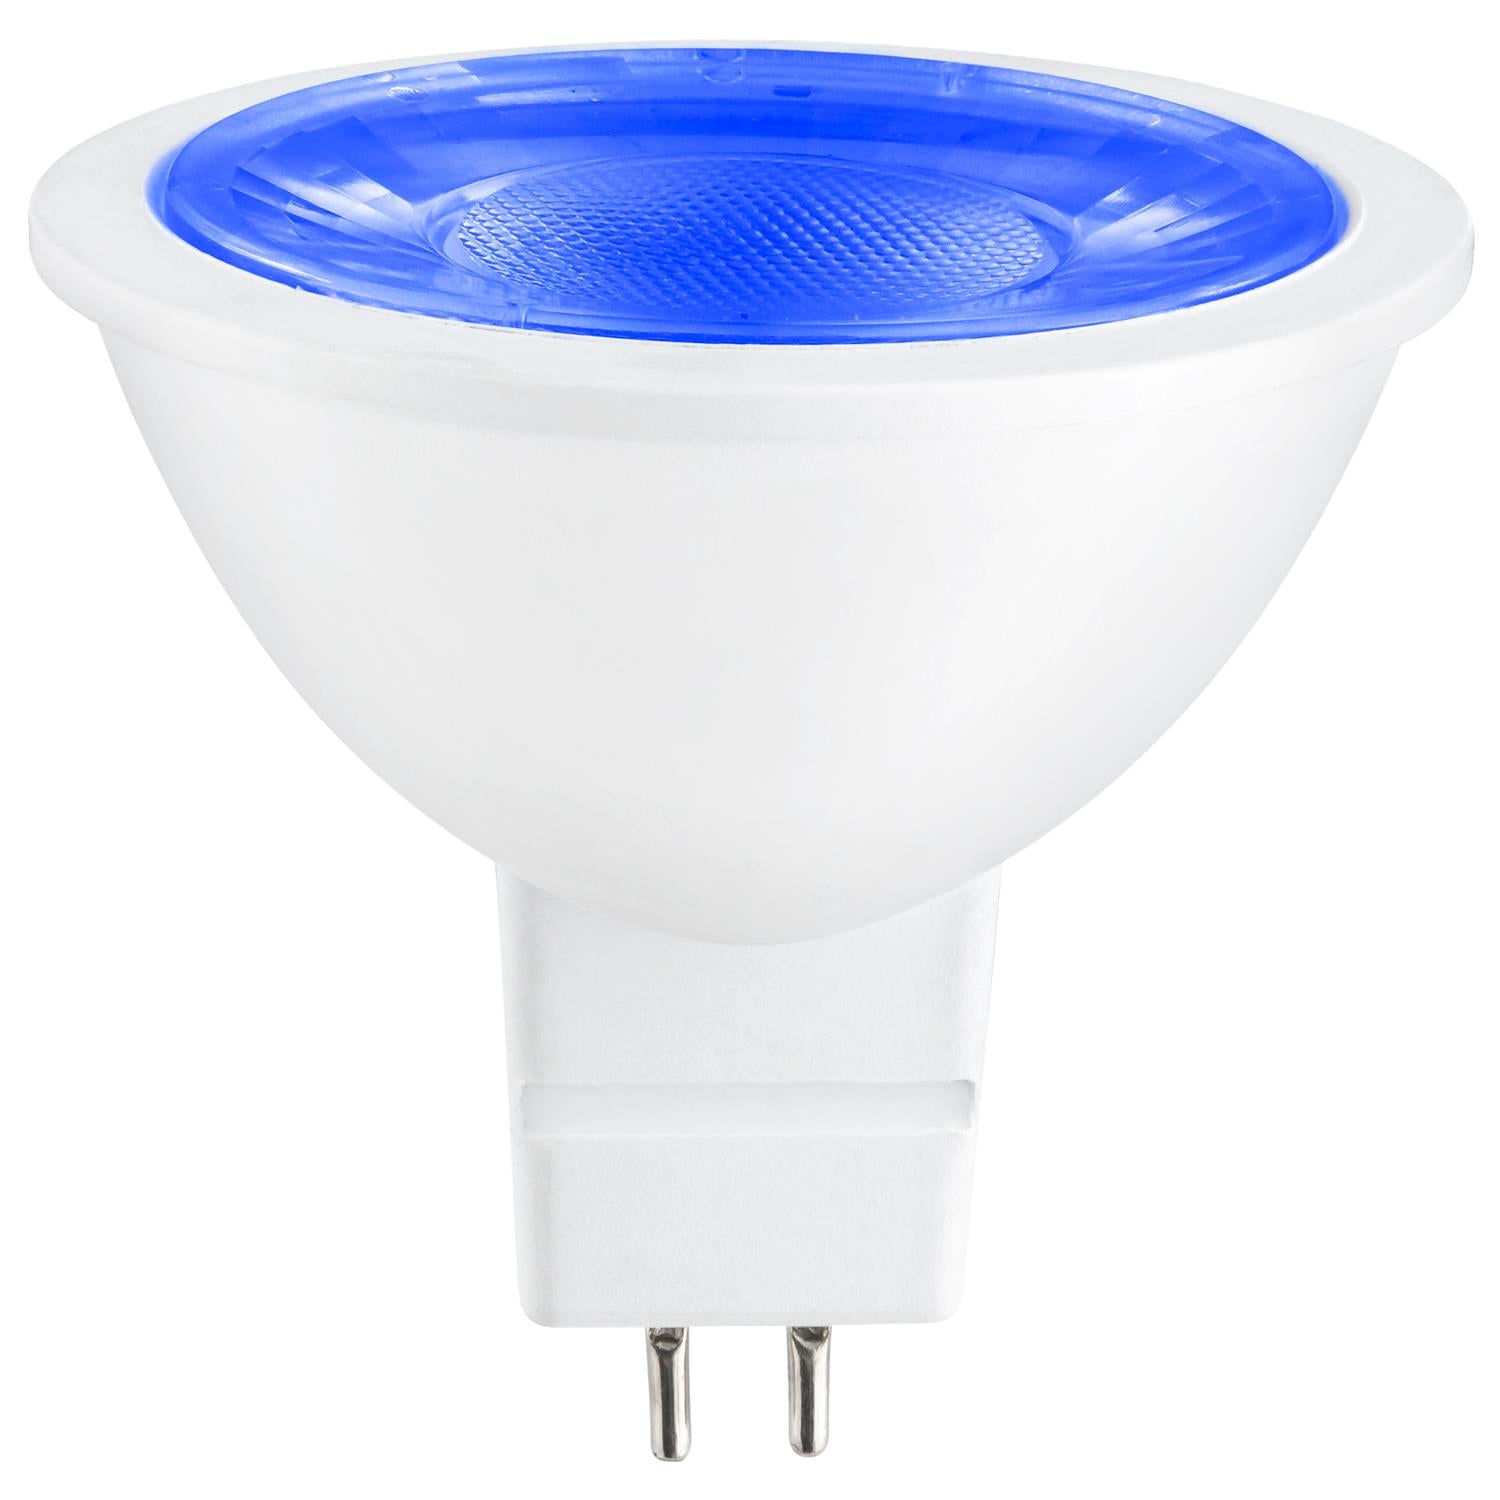 SUNLITE 3w 12v LED MR16 GU5.3 25-Watt Equivalent Blue Light Bulb